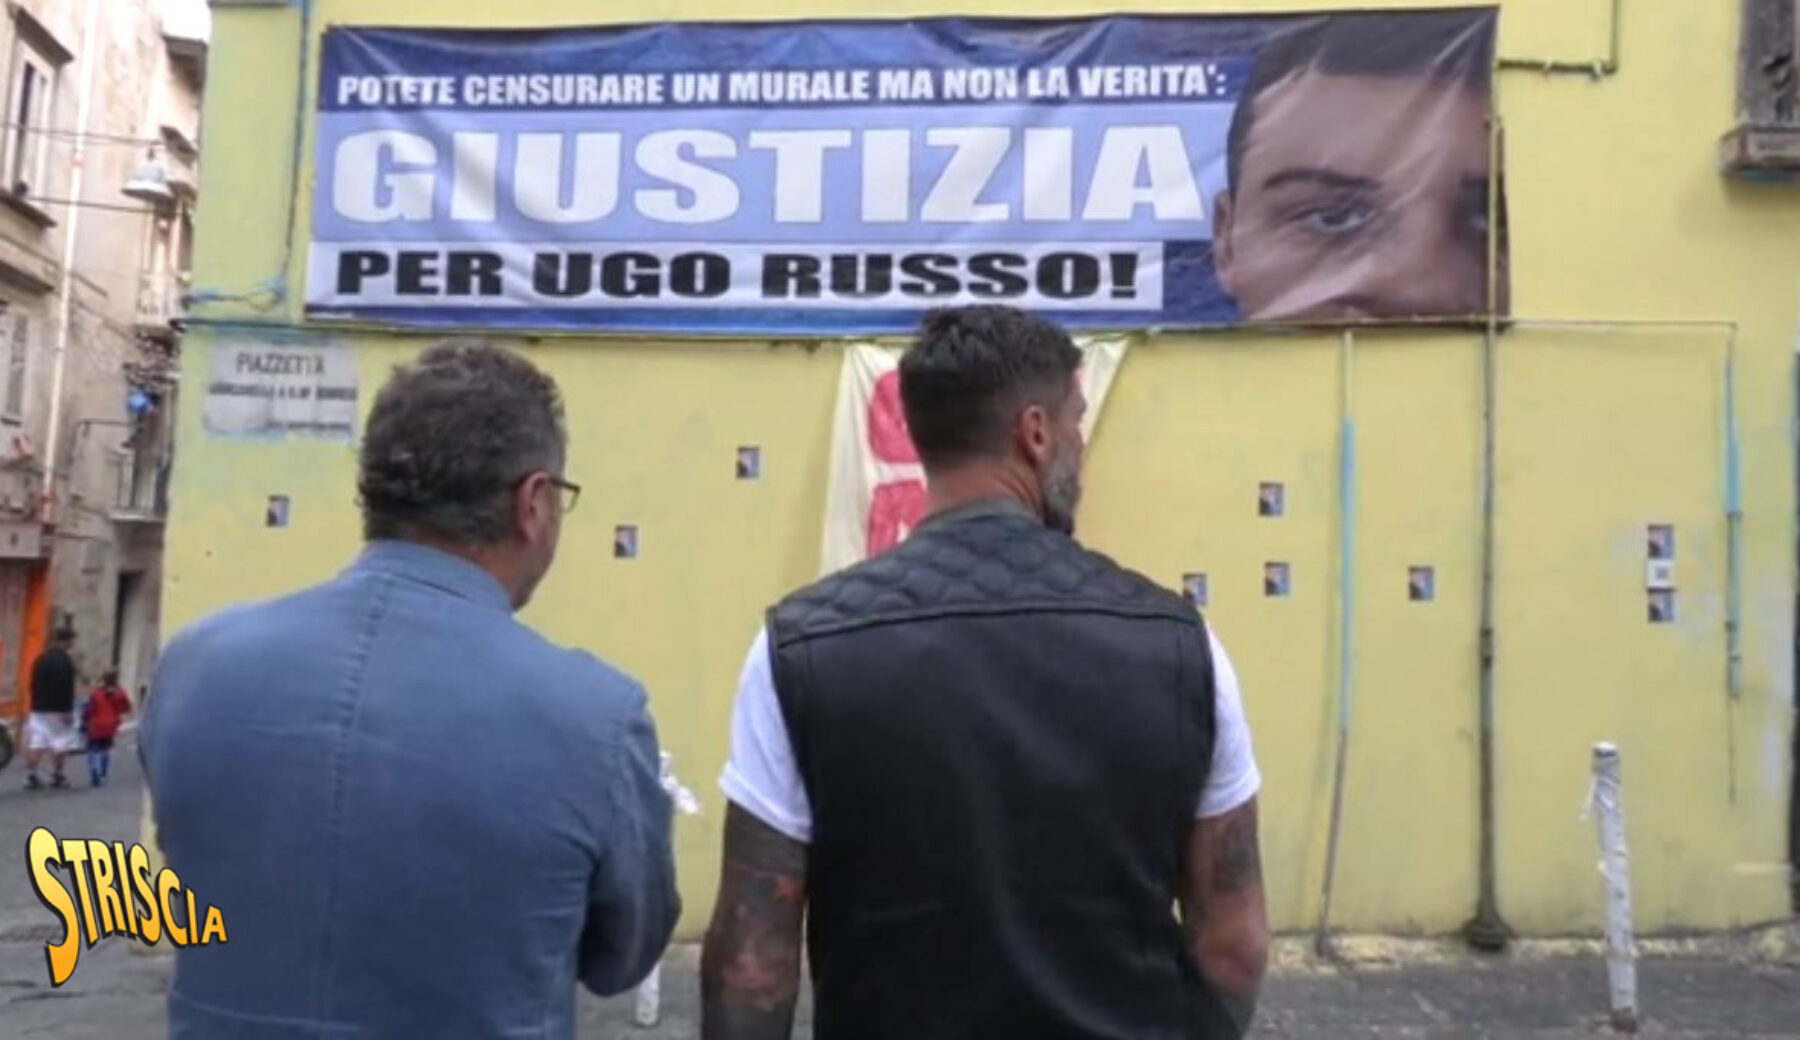 Oggi a Striscia: spunta uno striscione per Ugo Russo, il 15enne rapinatore ucciso. Il padre contro Brumotti